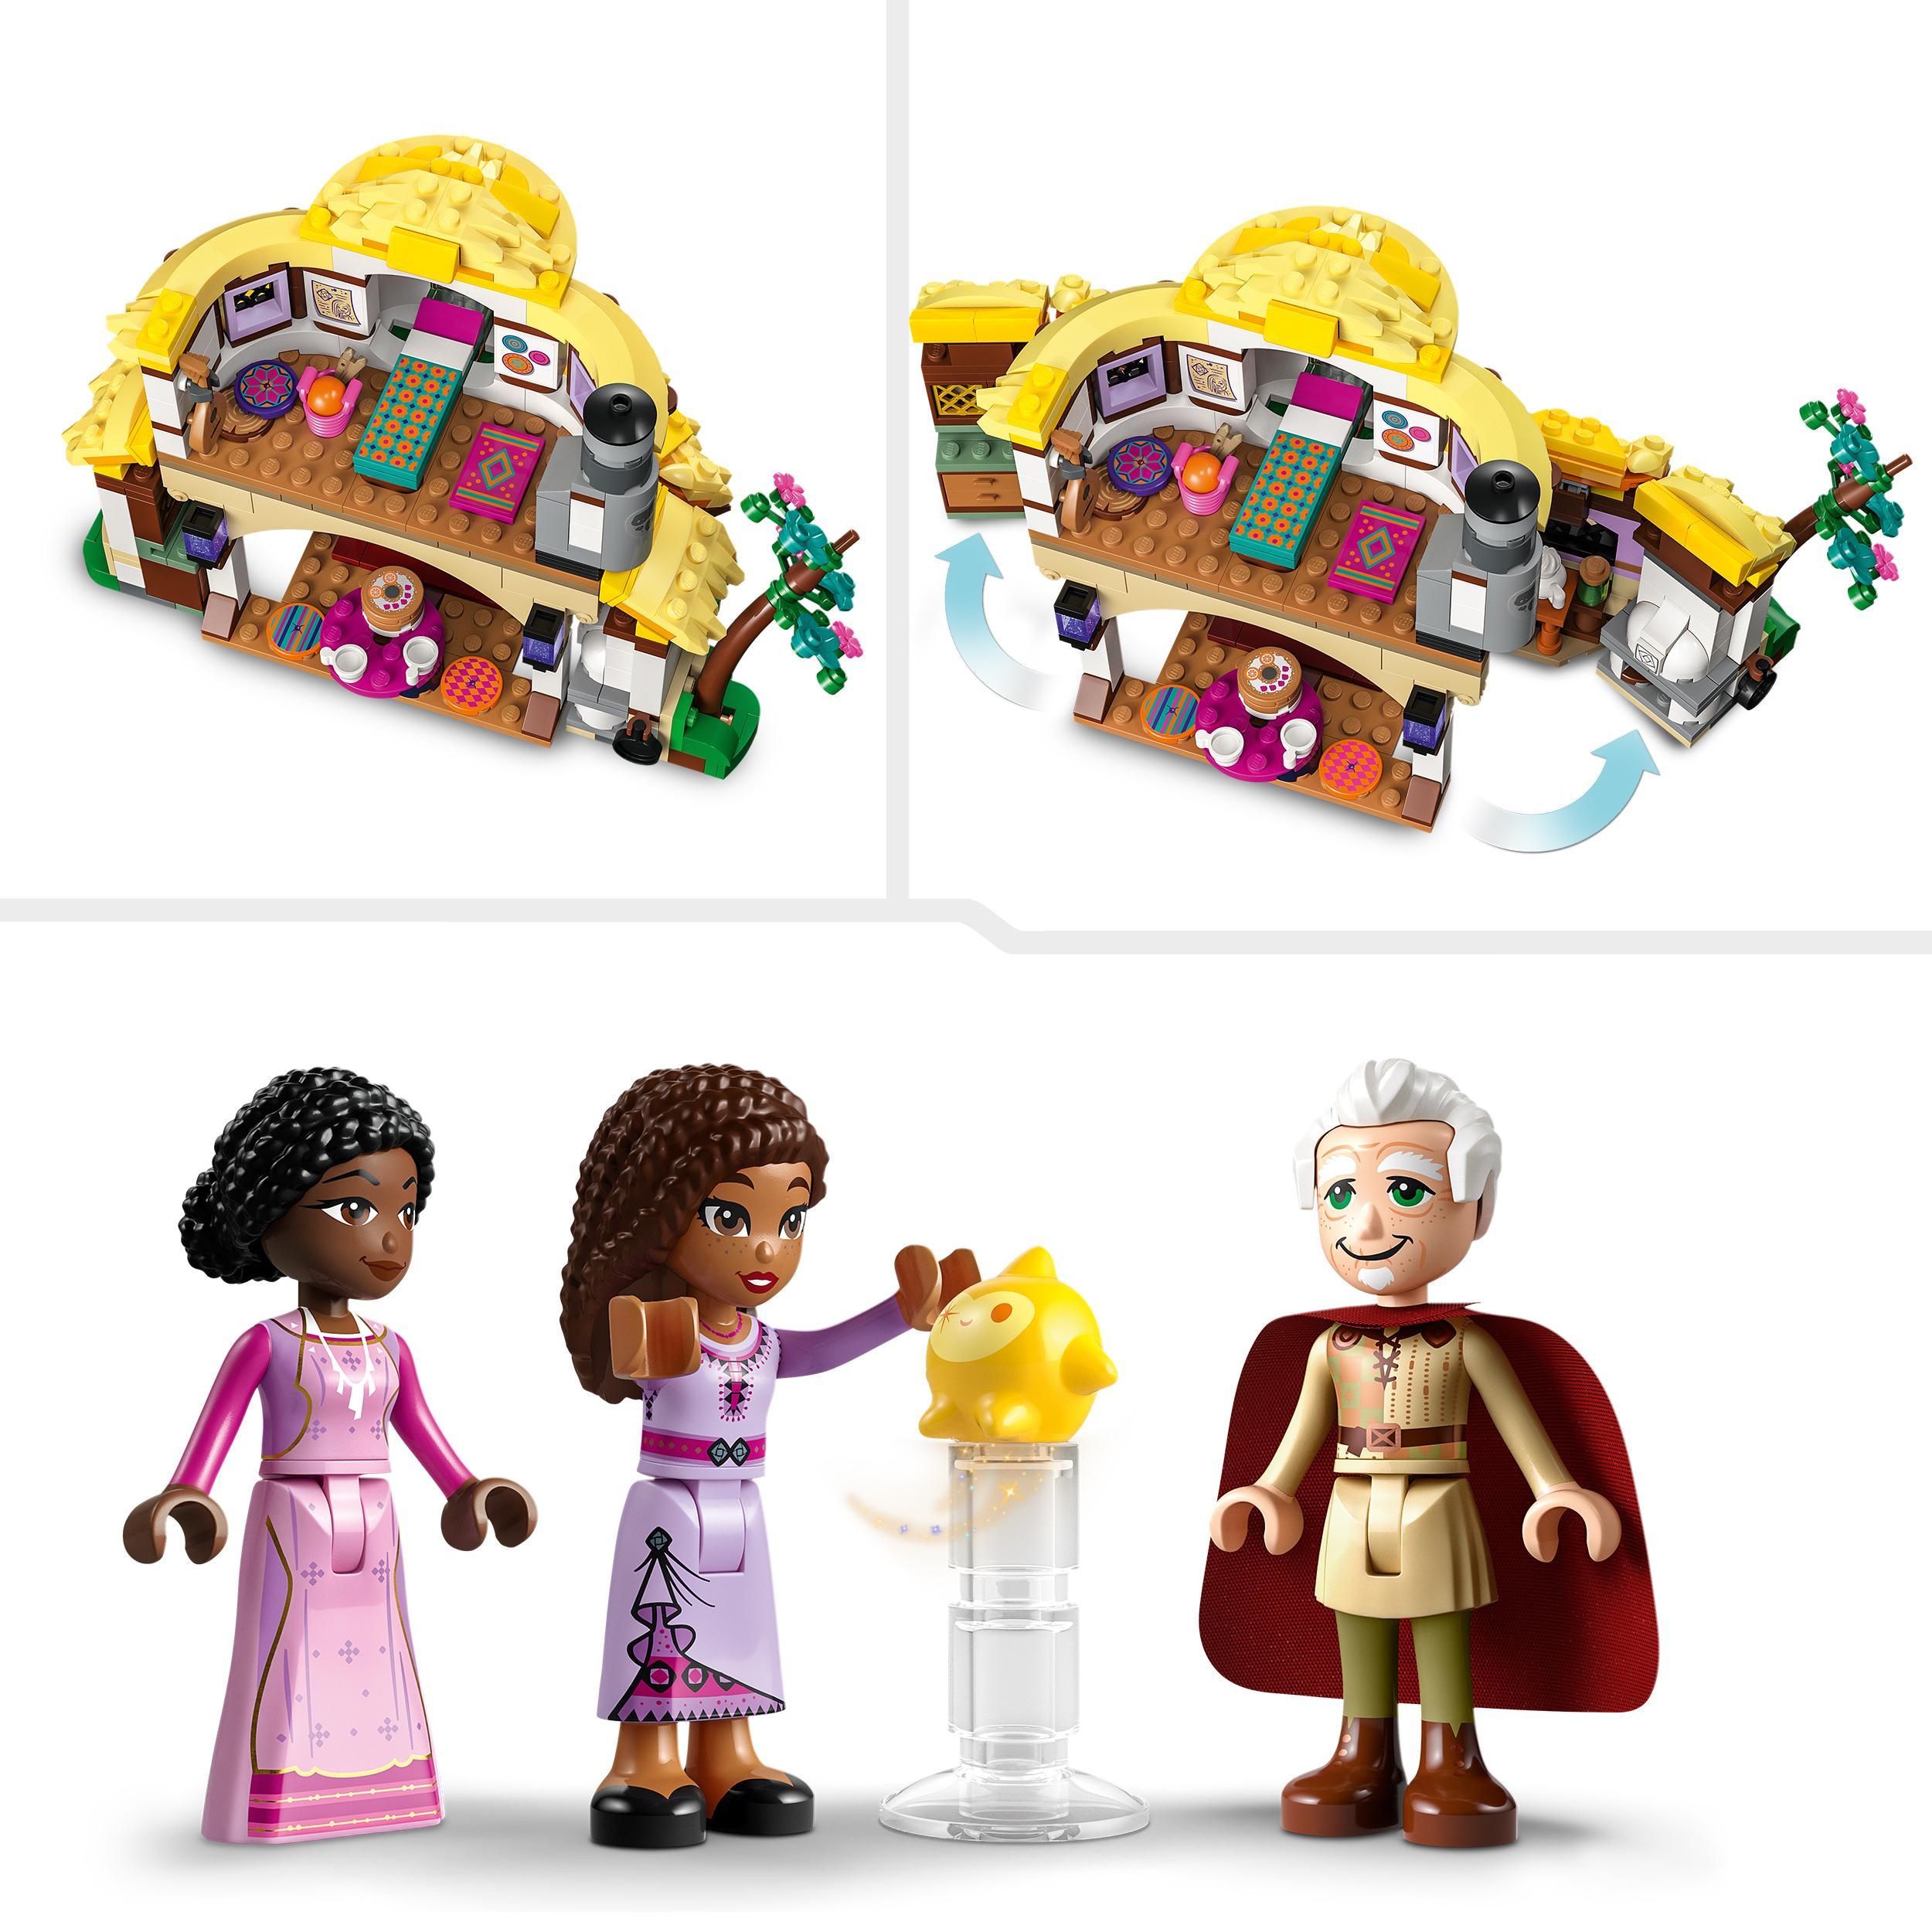 Lego disney wish 43231 il cottage di asha, casa delle bambole giocattolo dal film wish, idea regalo per bambine e bambini - DISNEY PRINCESS, LEGO DISNEY PRINCESS